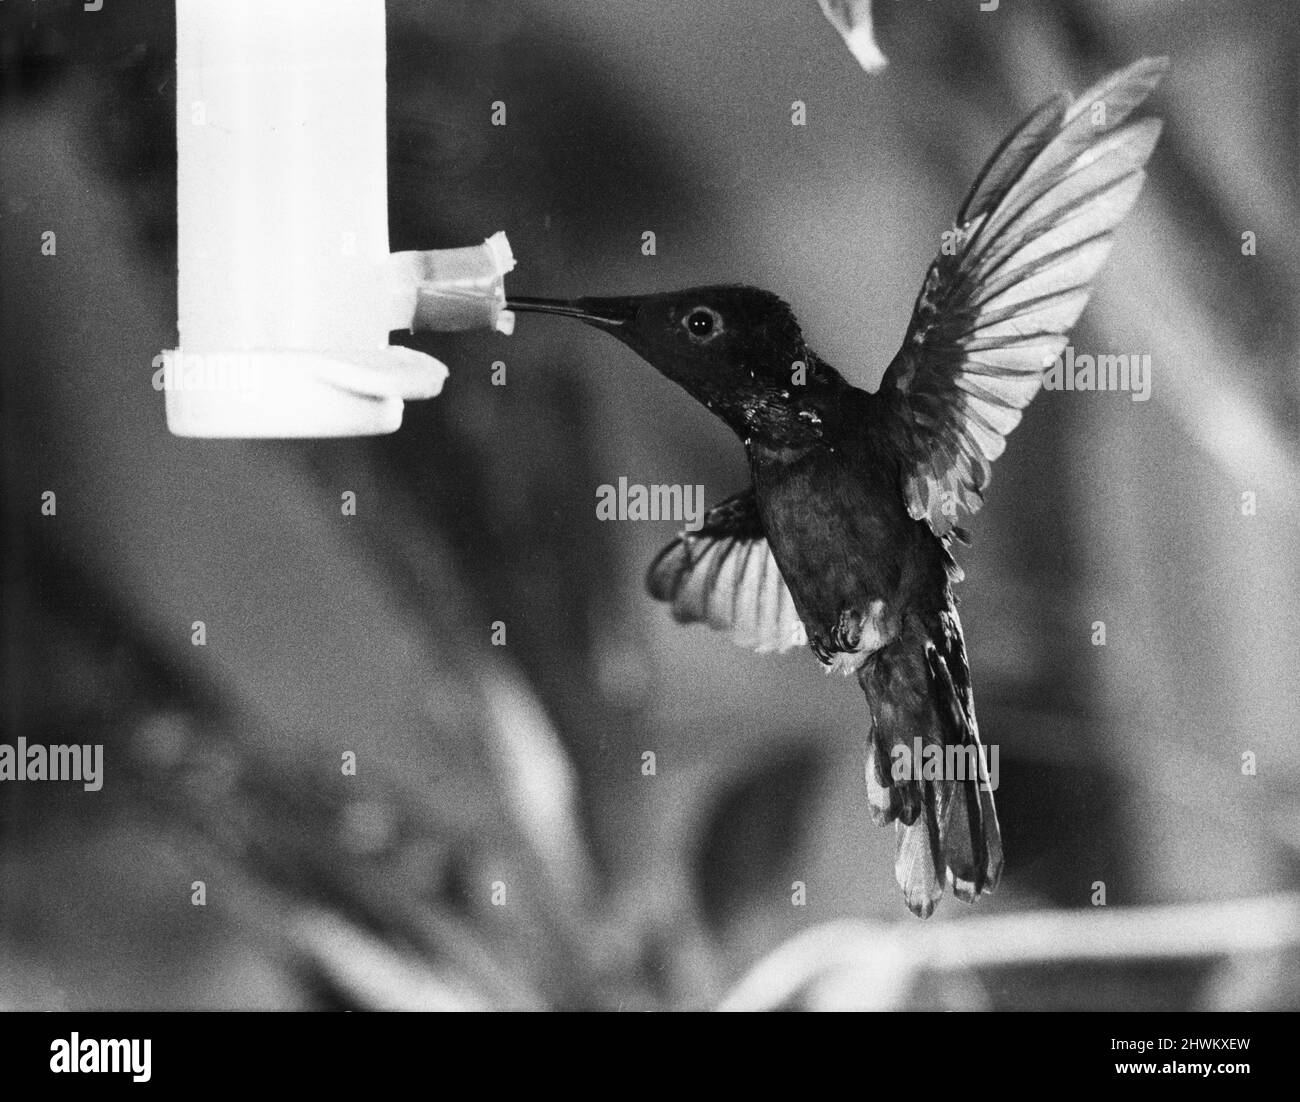 Es zu sehen ist nur Eine Weichzeichnung. Der summende Vogel, einer der kleinsten aller Vögel, von denen es etwa 300 Arten gibt, stammt aus dem tropischen Amerika. Sie haben einen sehr hohen Stoffwechsel und die Flügelschläge variieren von etwa 65 - 80 Schlägen pro Sekunde. Aus diesem Grund sehen Besucher des London Zoo Summing Bird House den Vogel, aber nicht die Flügel im Flug - sie sind nur eine Unschärfe. 17.. Februar 1972 Stockfoto